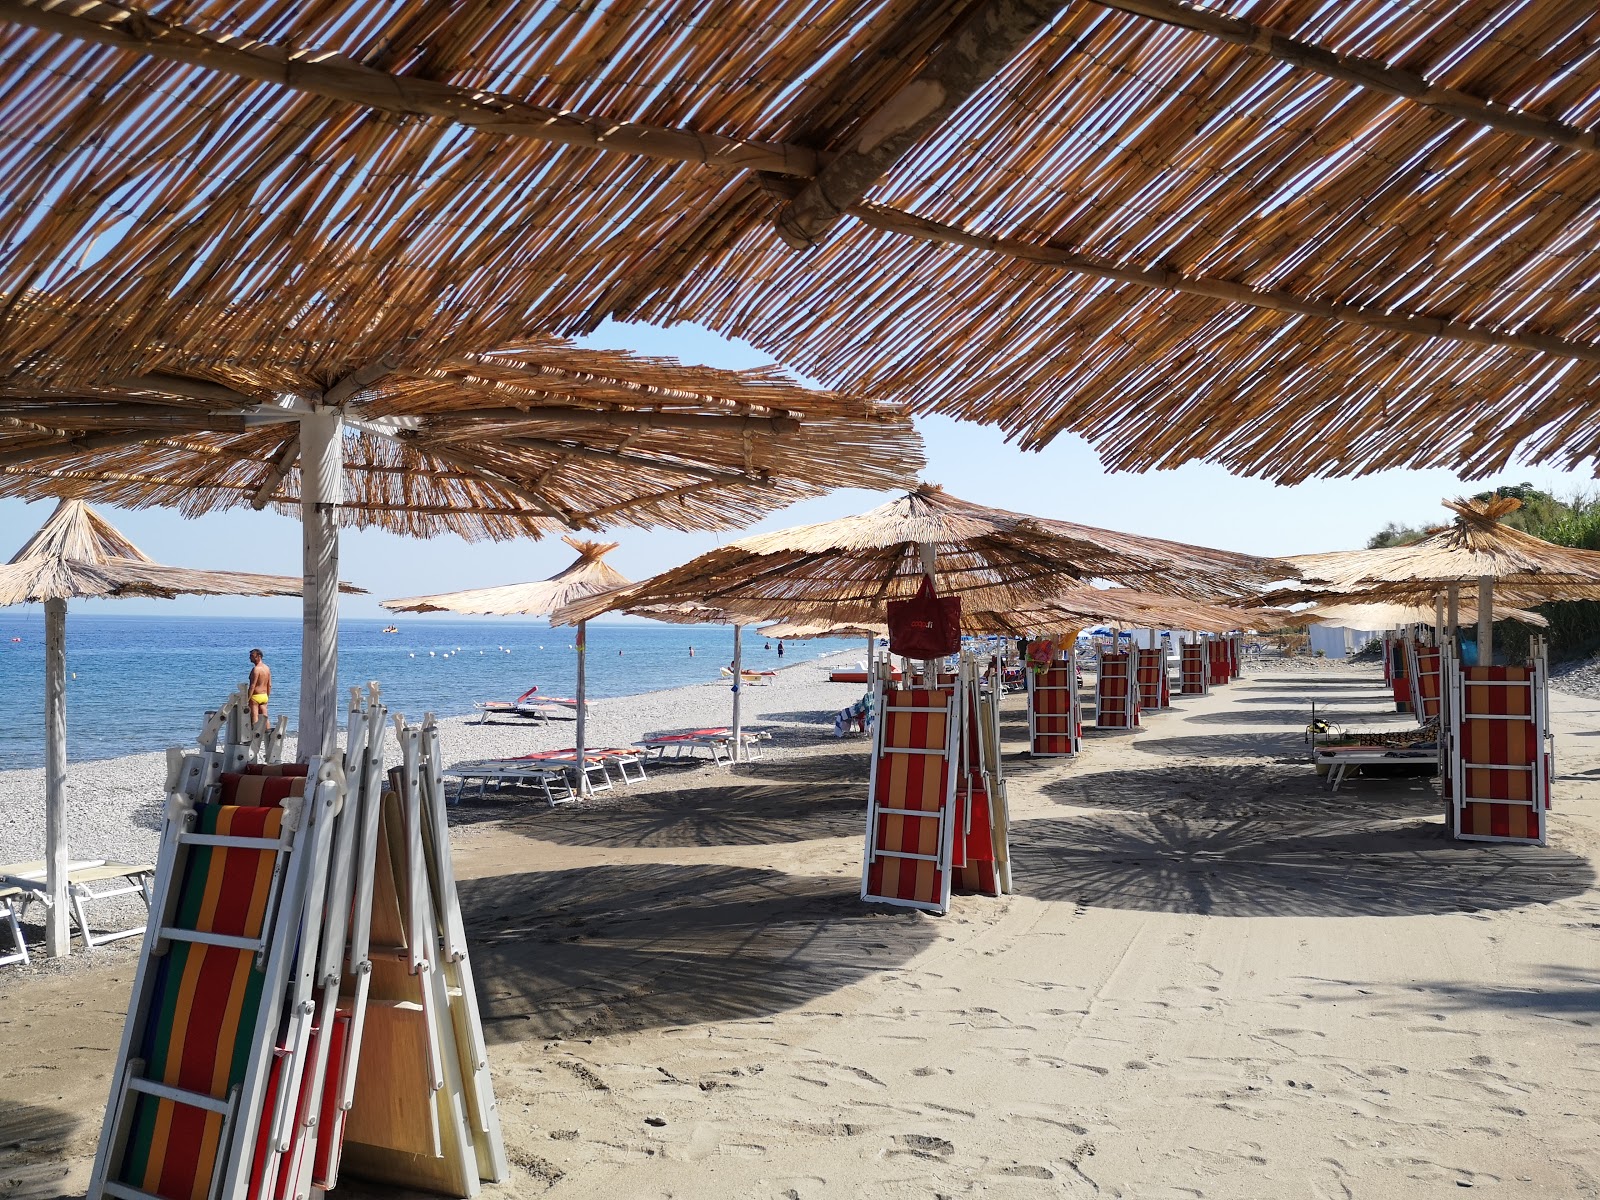 Foto von Spiaggia Pantano Martucci II mit langer gerader strand